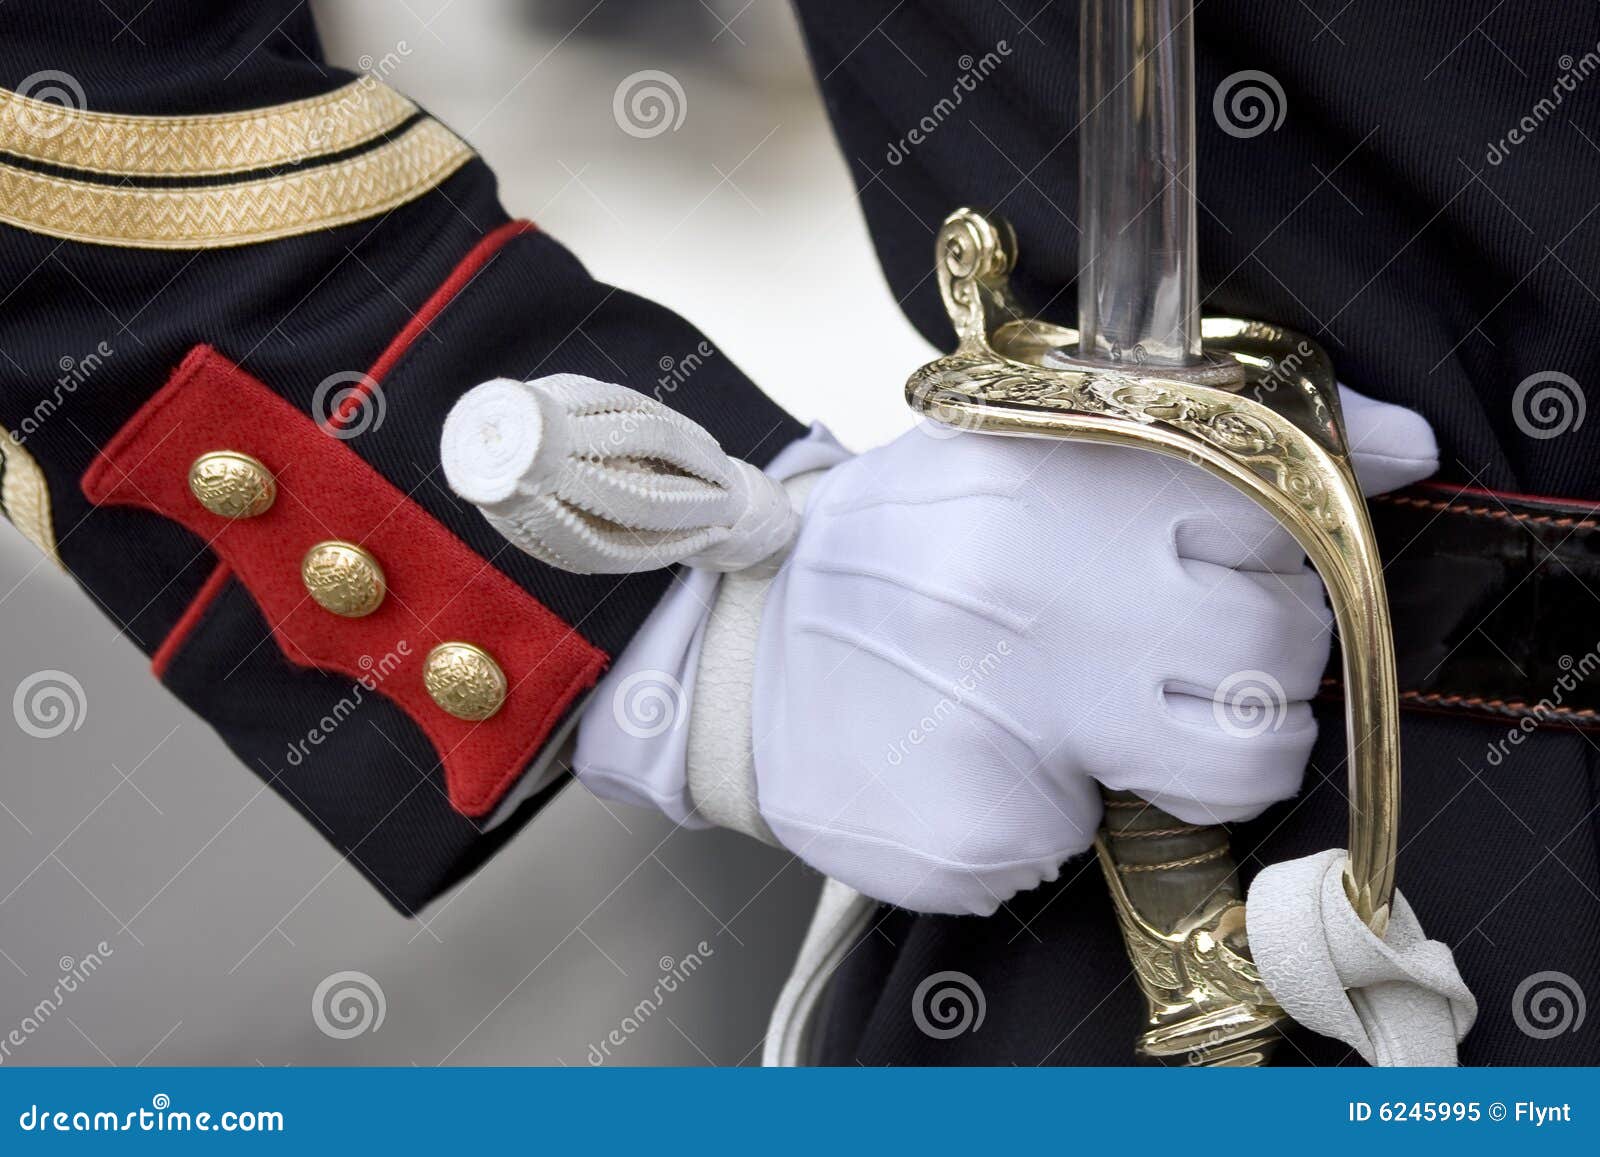 sword of honour guard